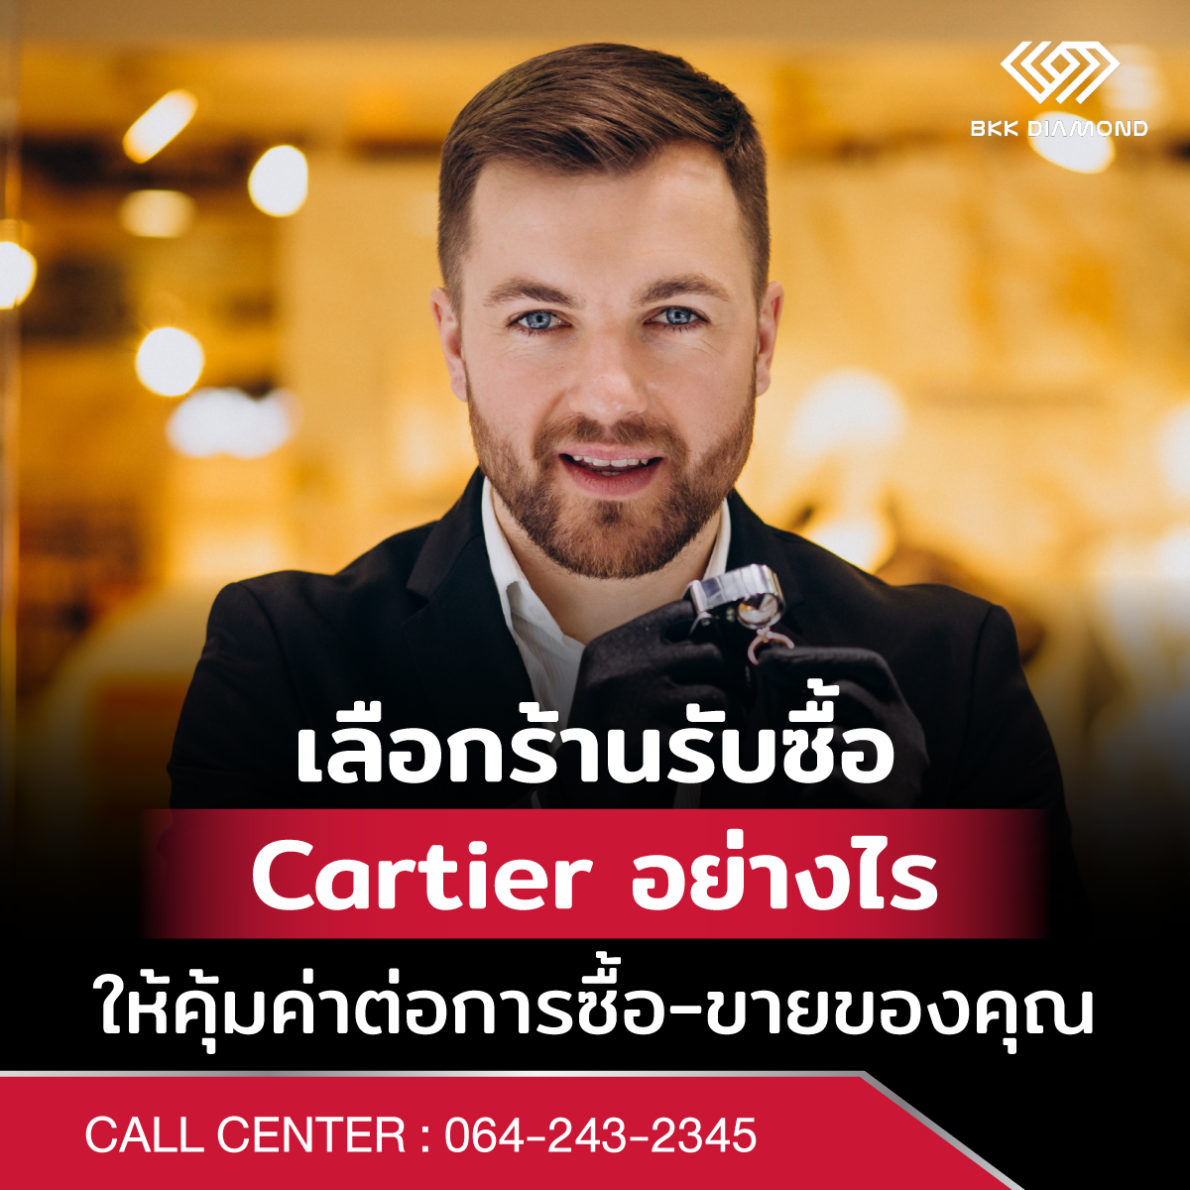 เลือกร้านรับซื้อ Cartier อย่างไรให้คุ้มค่าต่อการซื้อ-ขายของคุณ